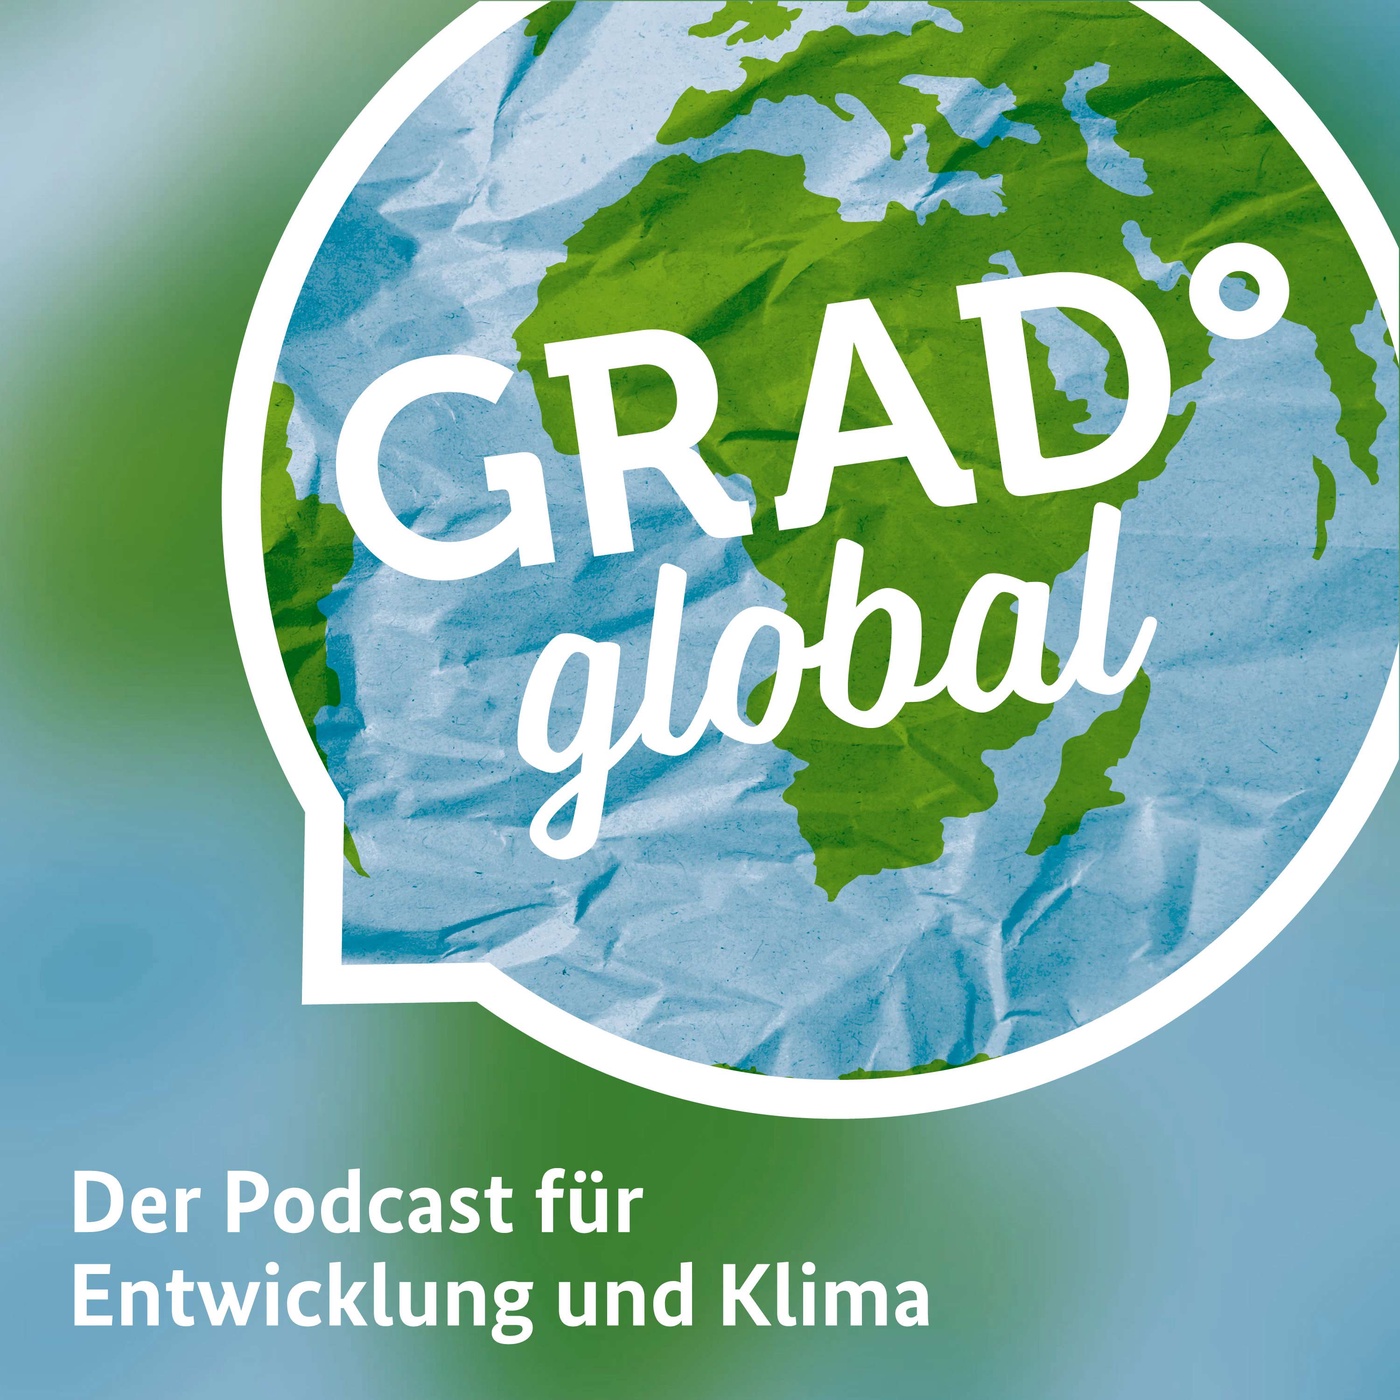 Grad° Global - Der Podcast für Entwicklung und Klima